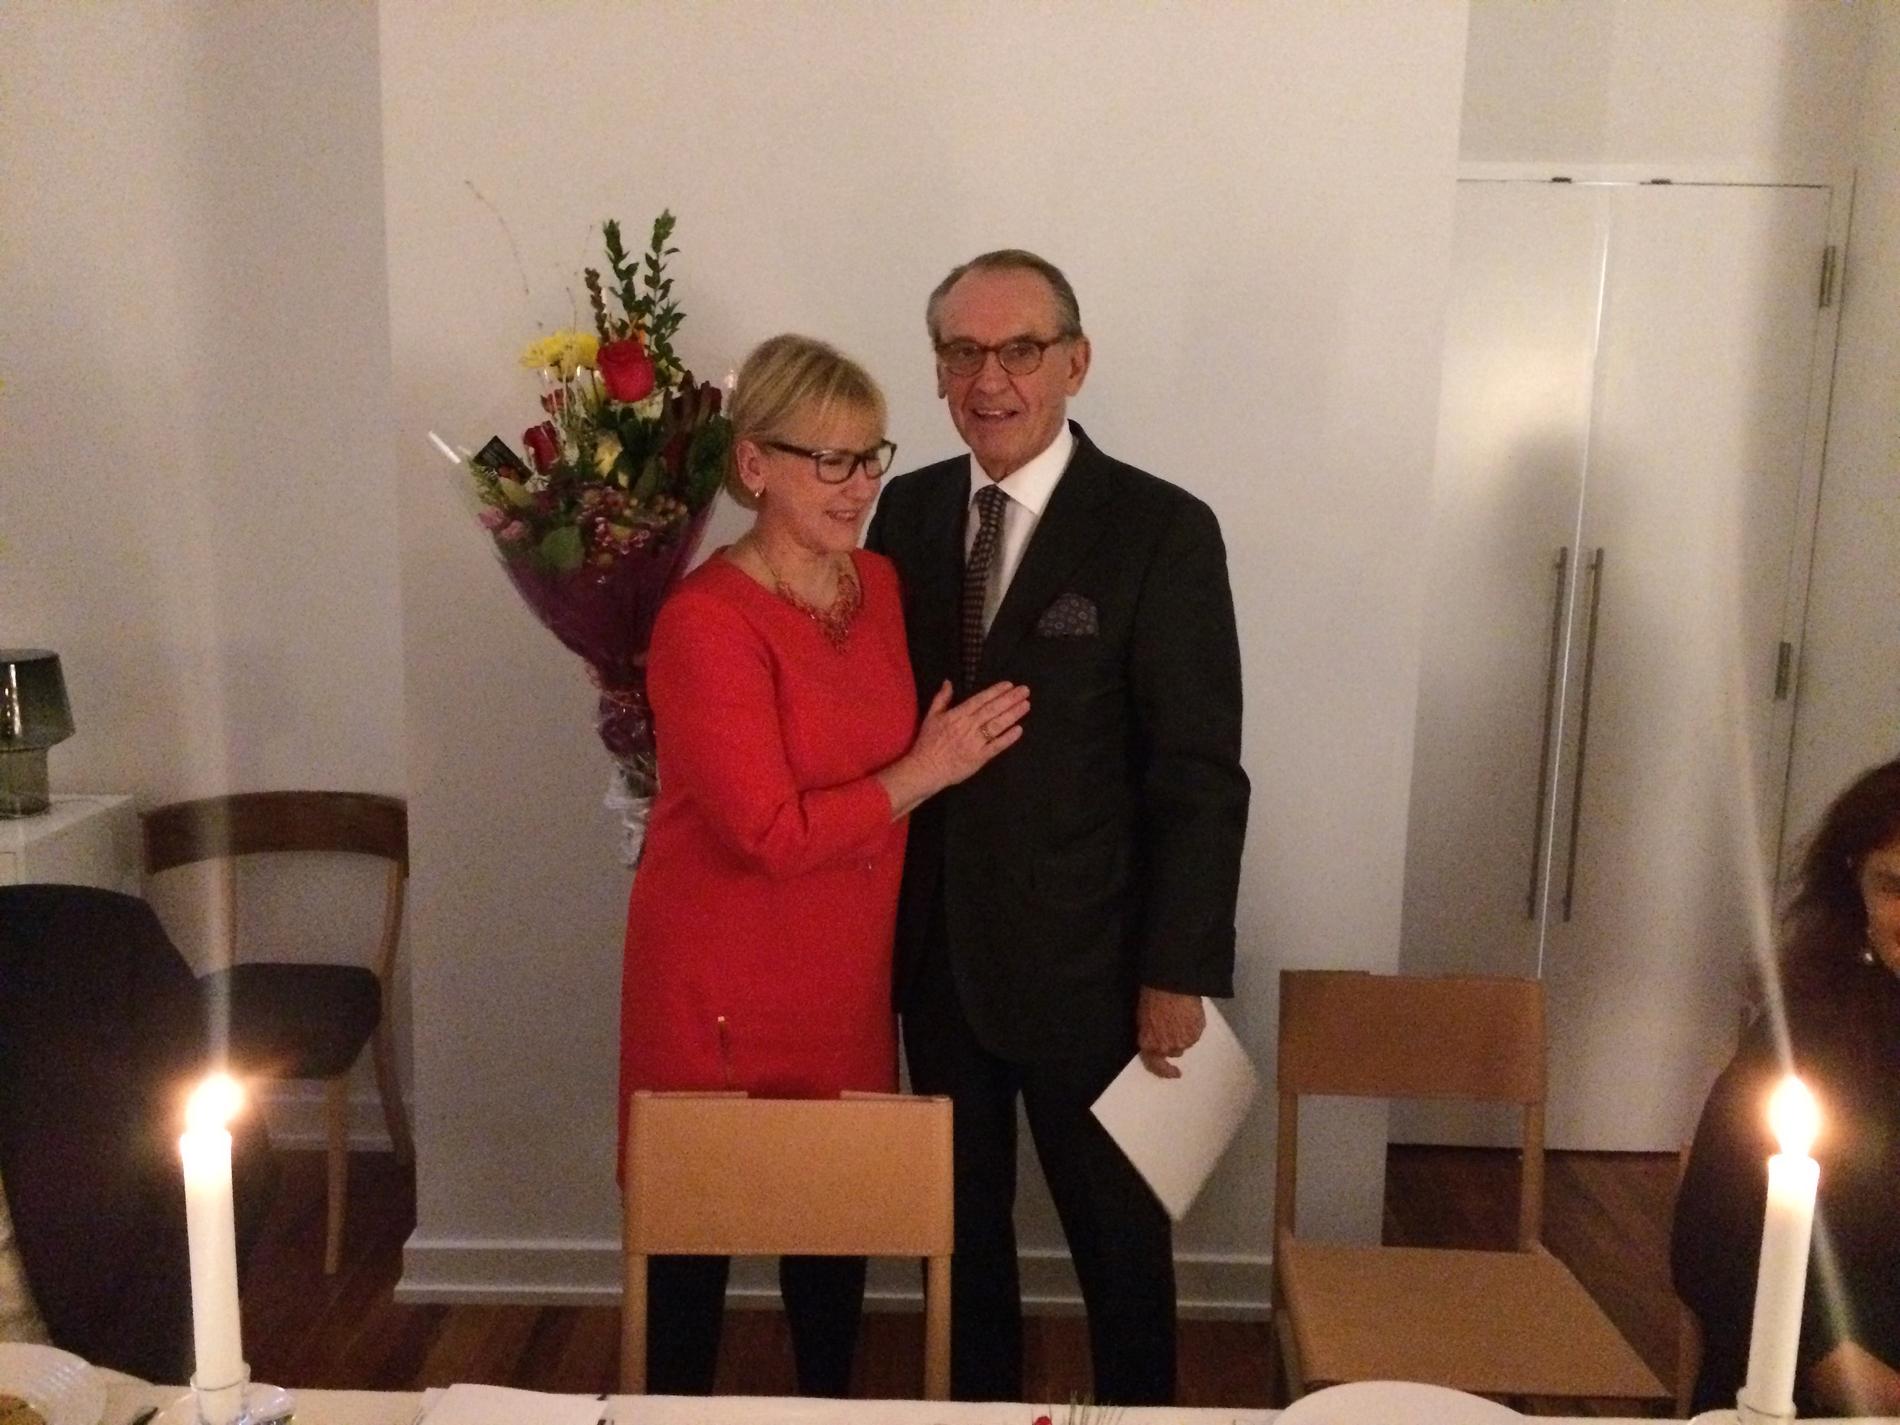 Margot Wallström och Jan Eliasson som får medalj av regeringen. "Han var stolt och rörd" säger Wallström om pristagaren.